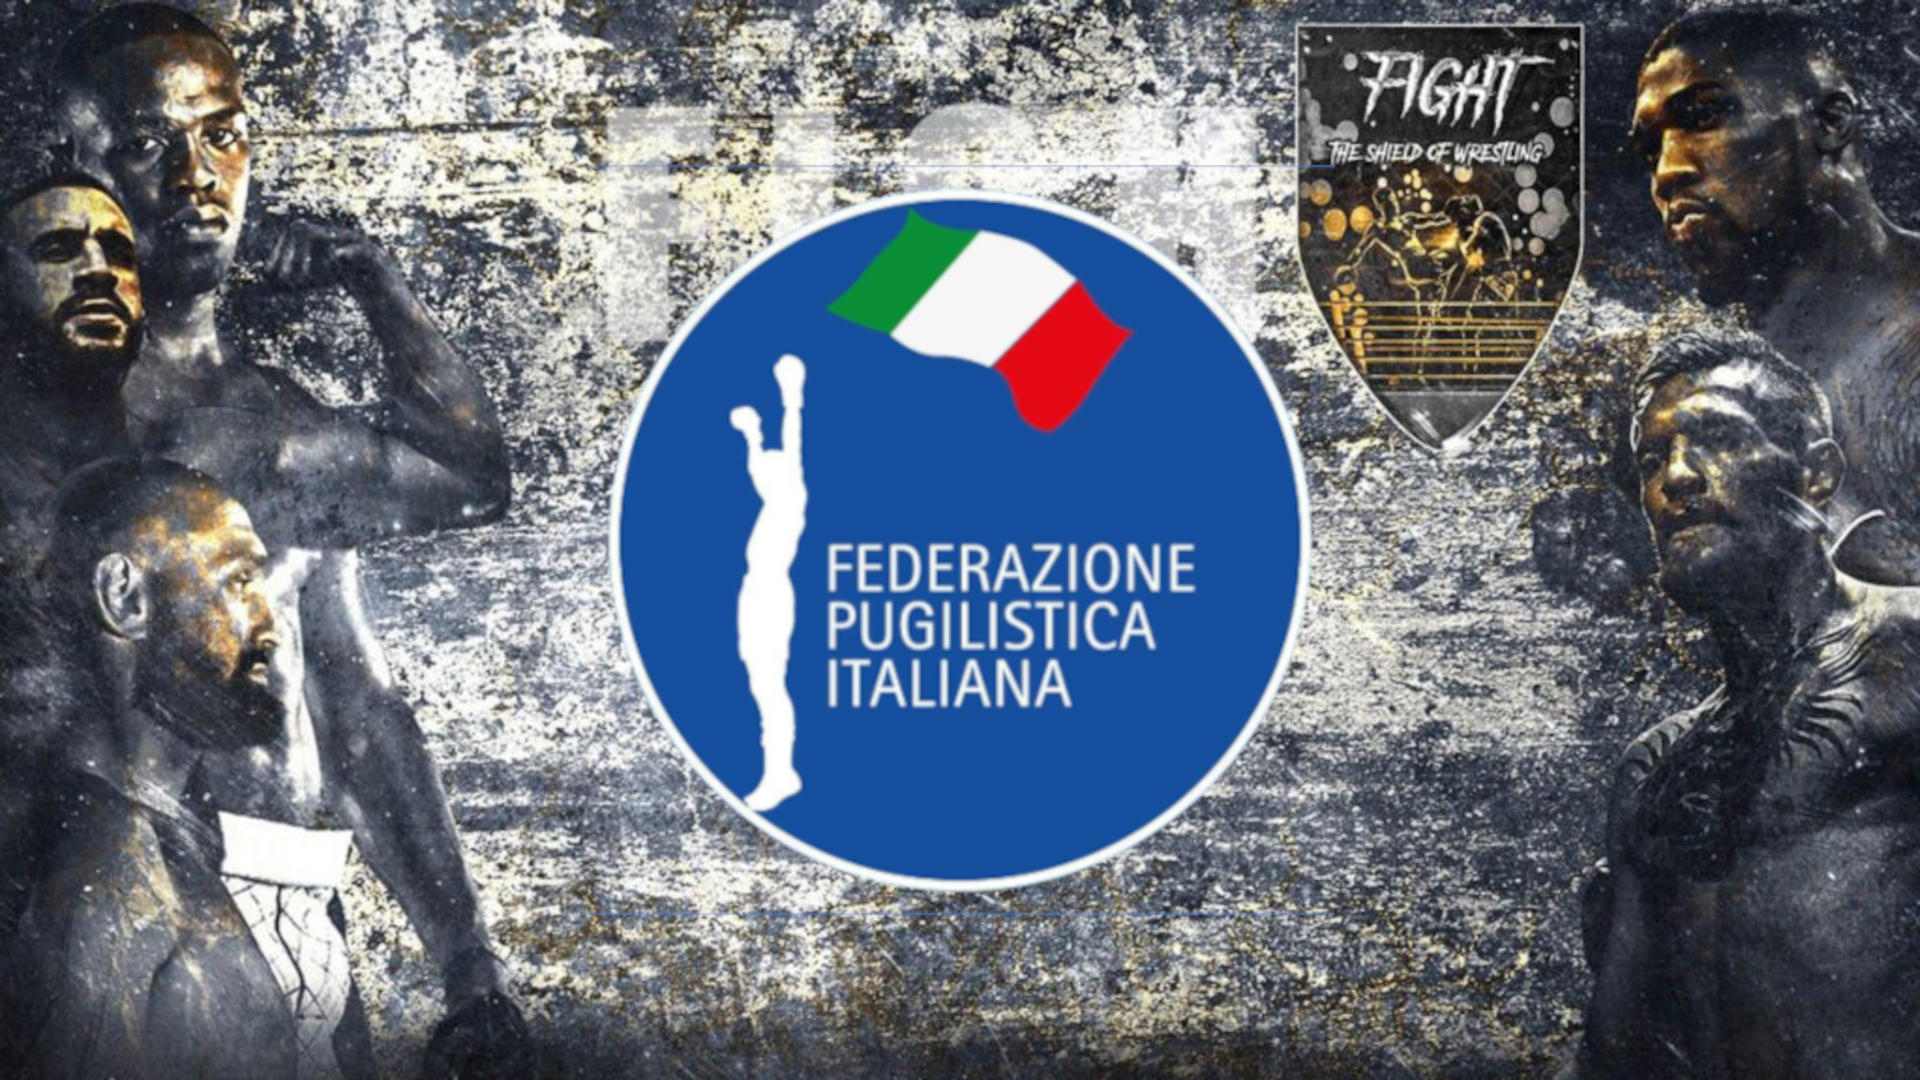 Bevilacqua vs Gualtieri il 10 settembre per l’IBF Inter.